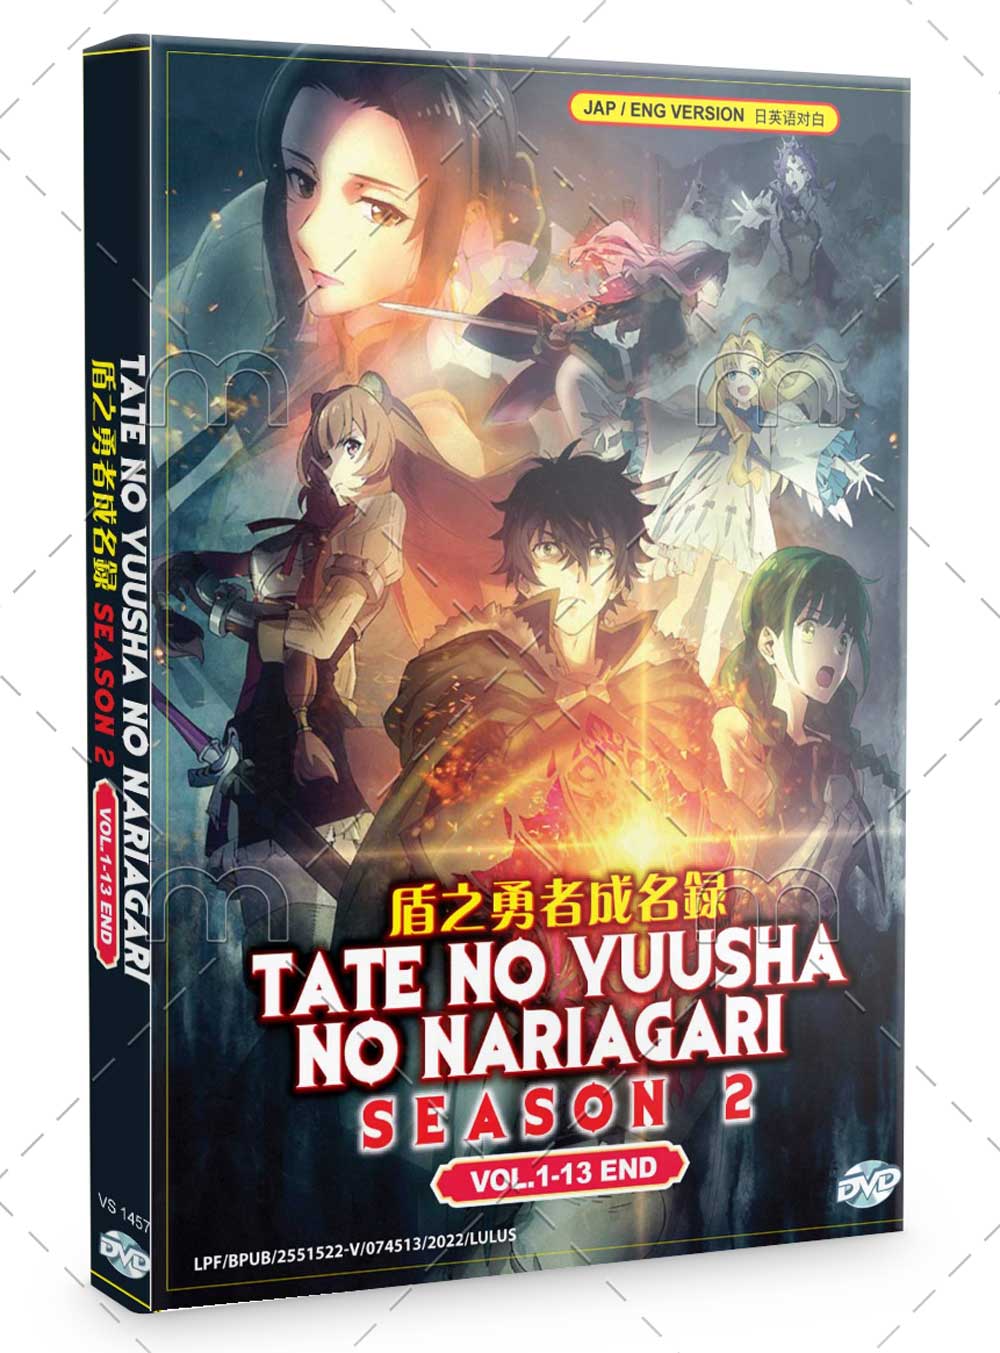 Tate No Yuusha No Nariagari Season 2